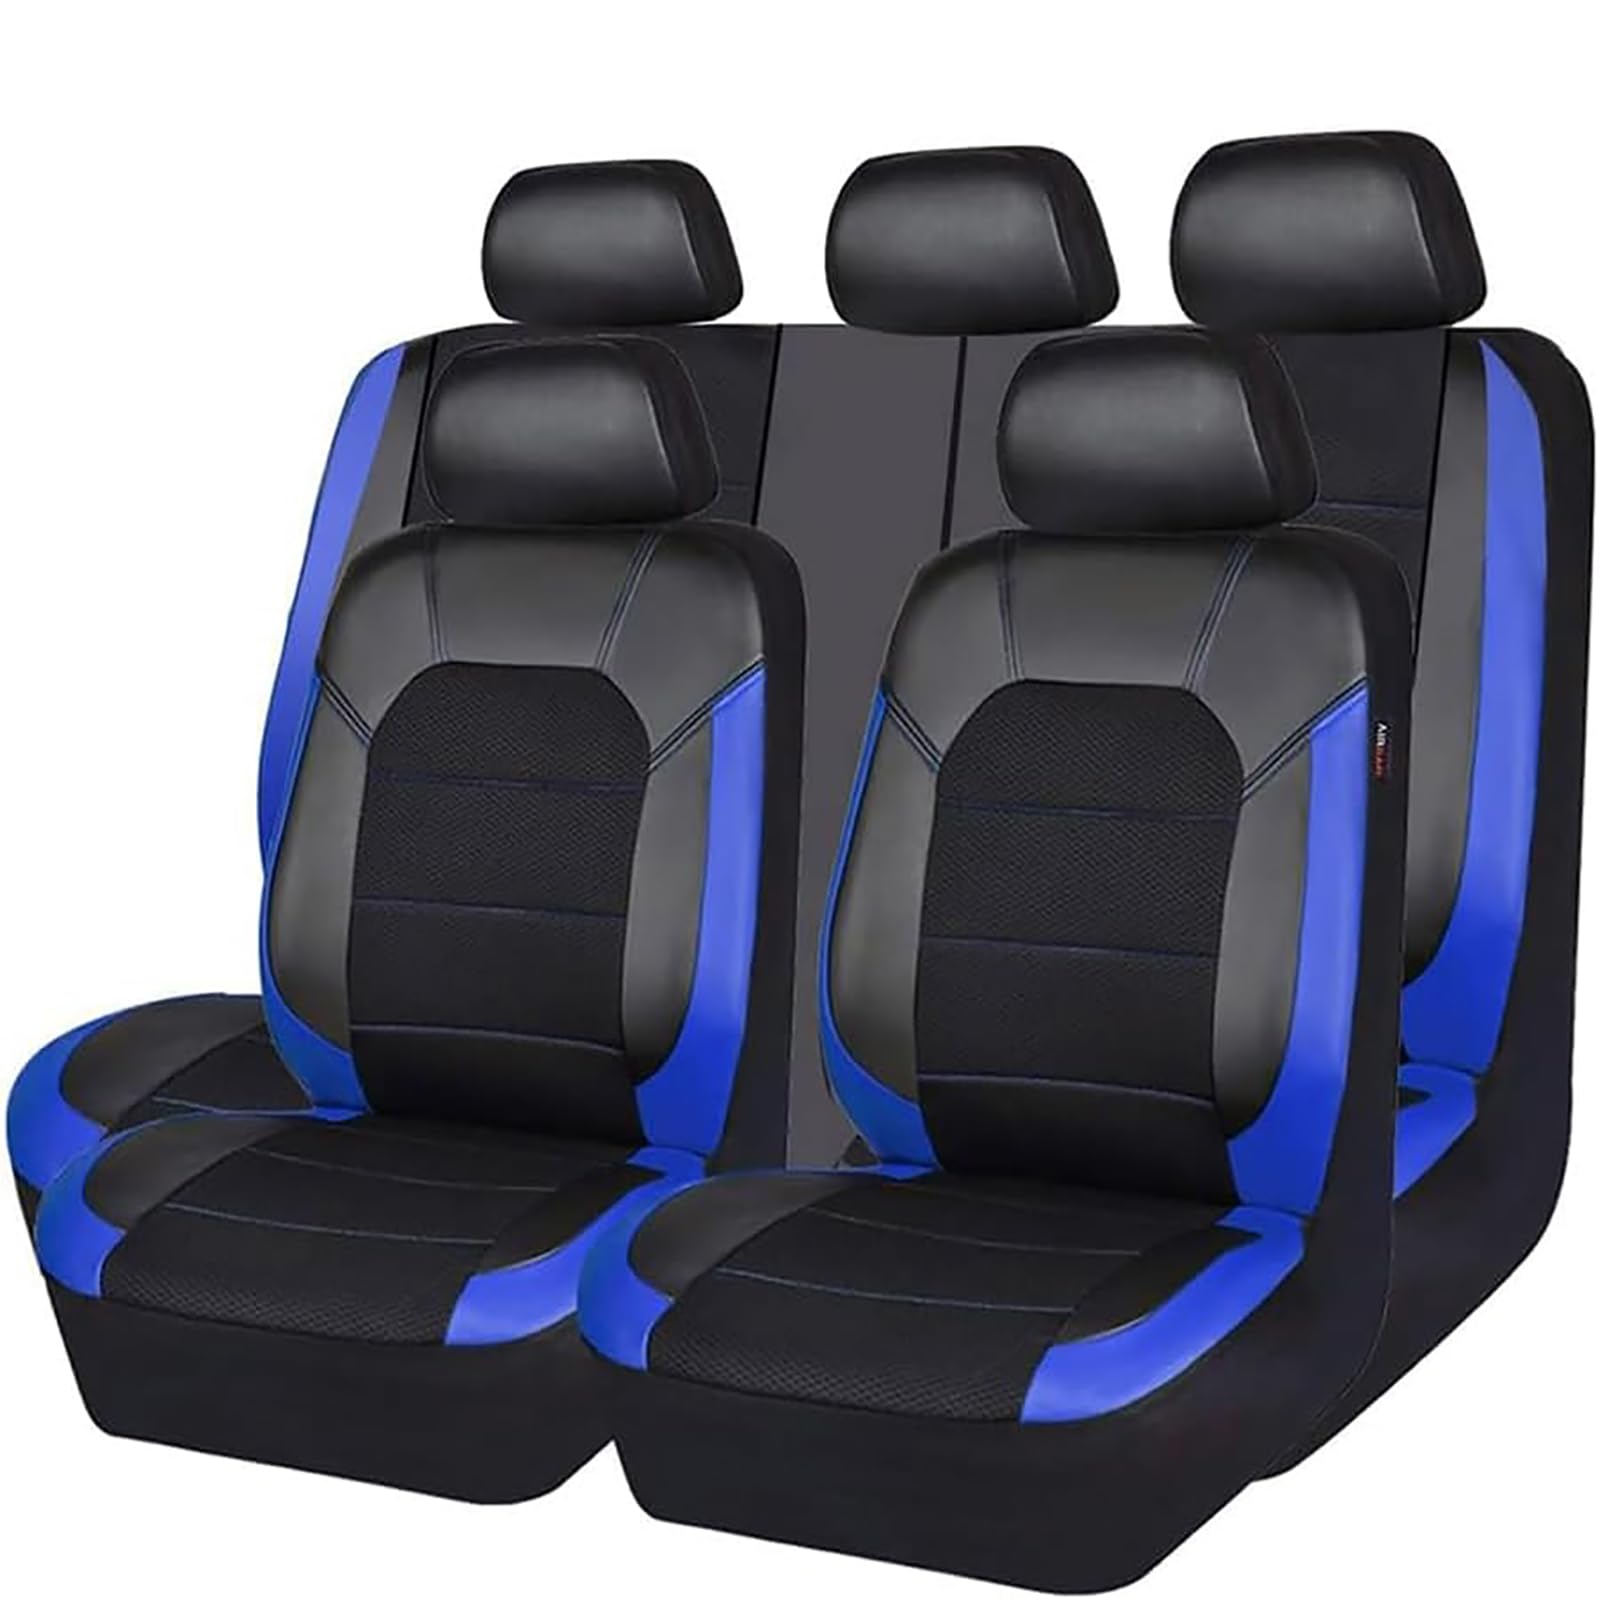 EYHQKRTR Auto Leder Sitzkissen Für Suzuki Grand Vitara 2007-2022, 5 Sitzer Full Set SitzbezüGe Schonbezug Vorne Rückbank Sitzschutz Compatible Airbag Innenraum Zubehör,C/Blue von EYHQKRTR